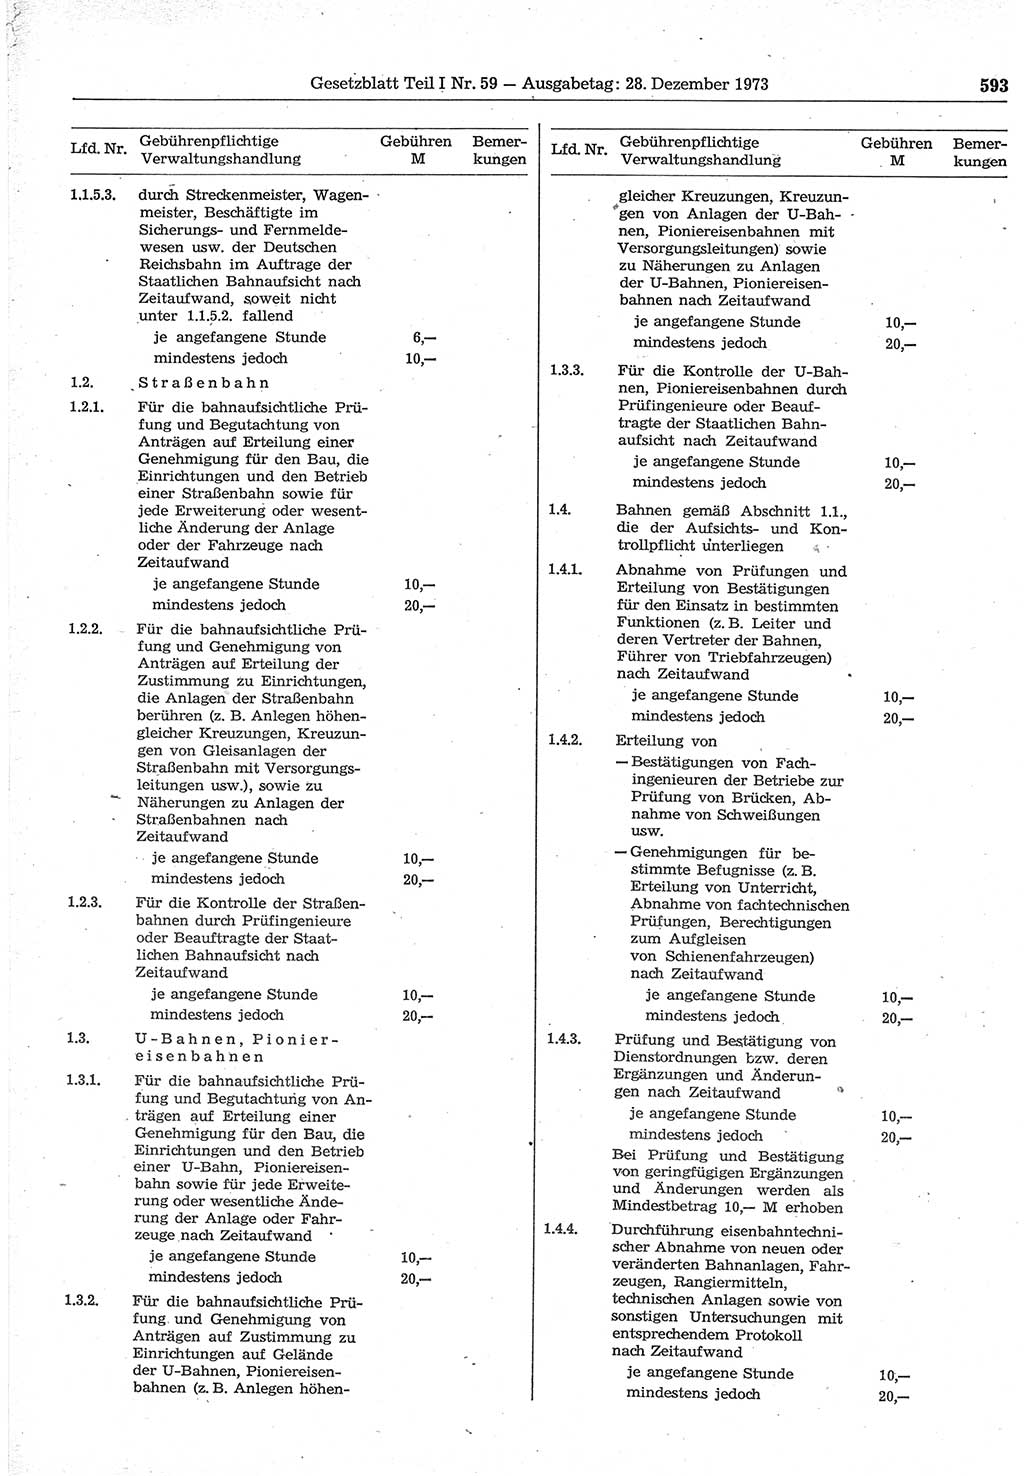 Gesetzblatt (GBl.) der Deutschen Demokratischen Republik (DDR) Teil Ⅰ 1973, Seite 593 (GBl. DDR Ⅰ 1973, S. 593)